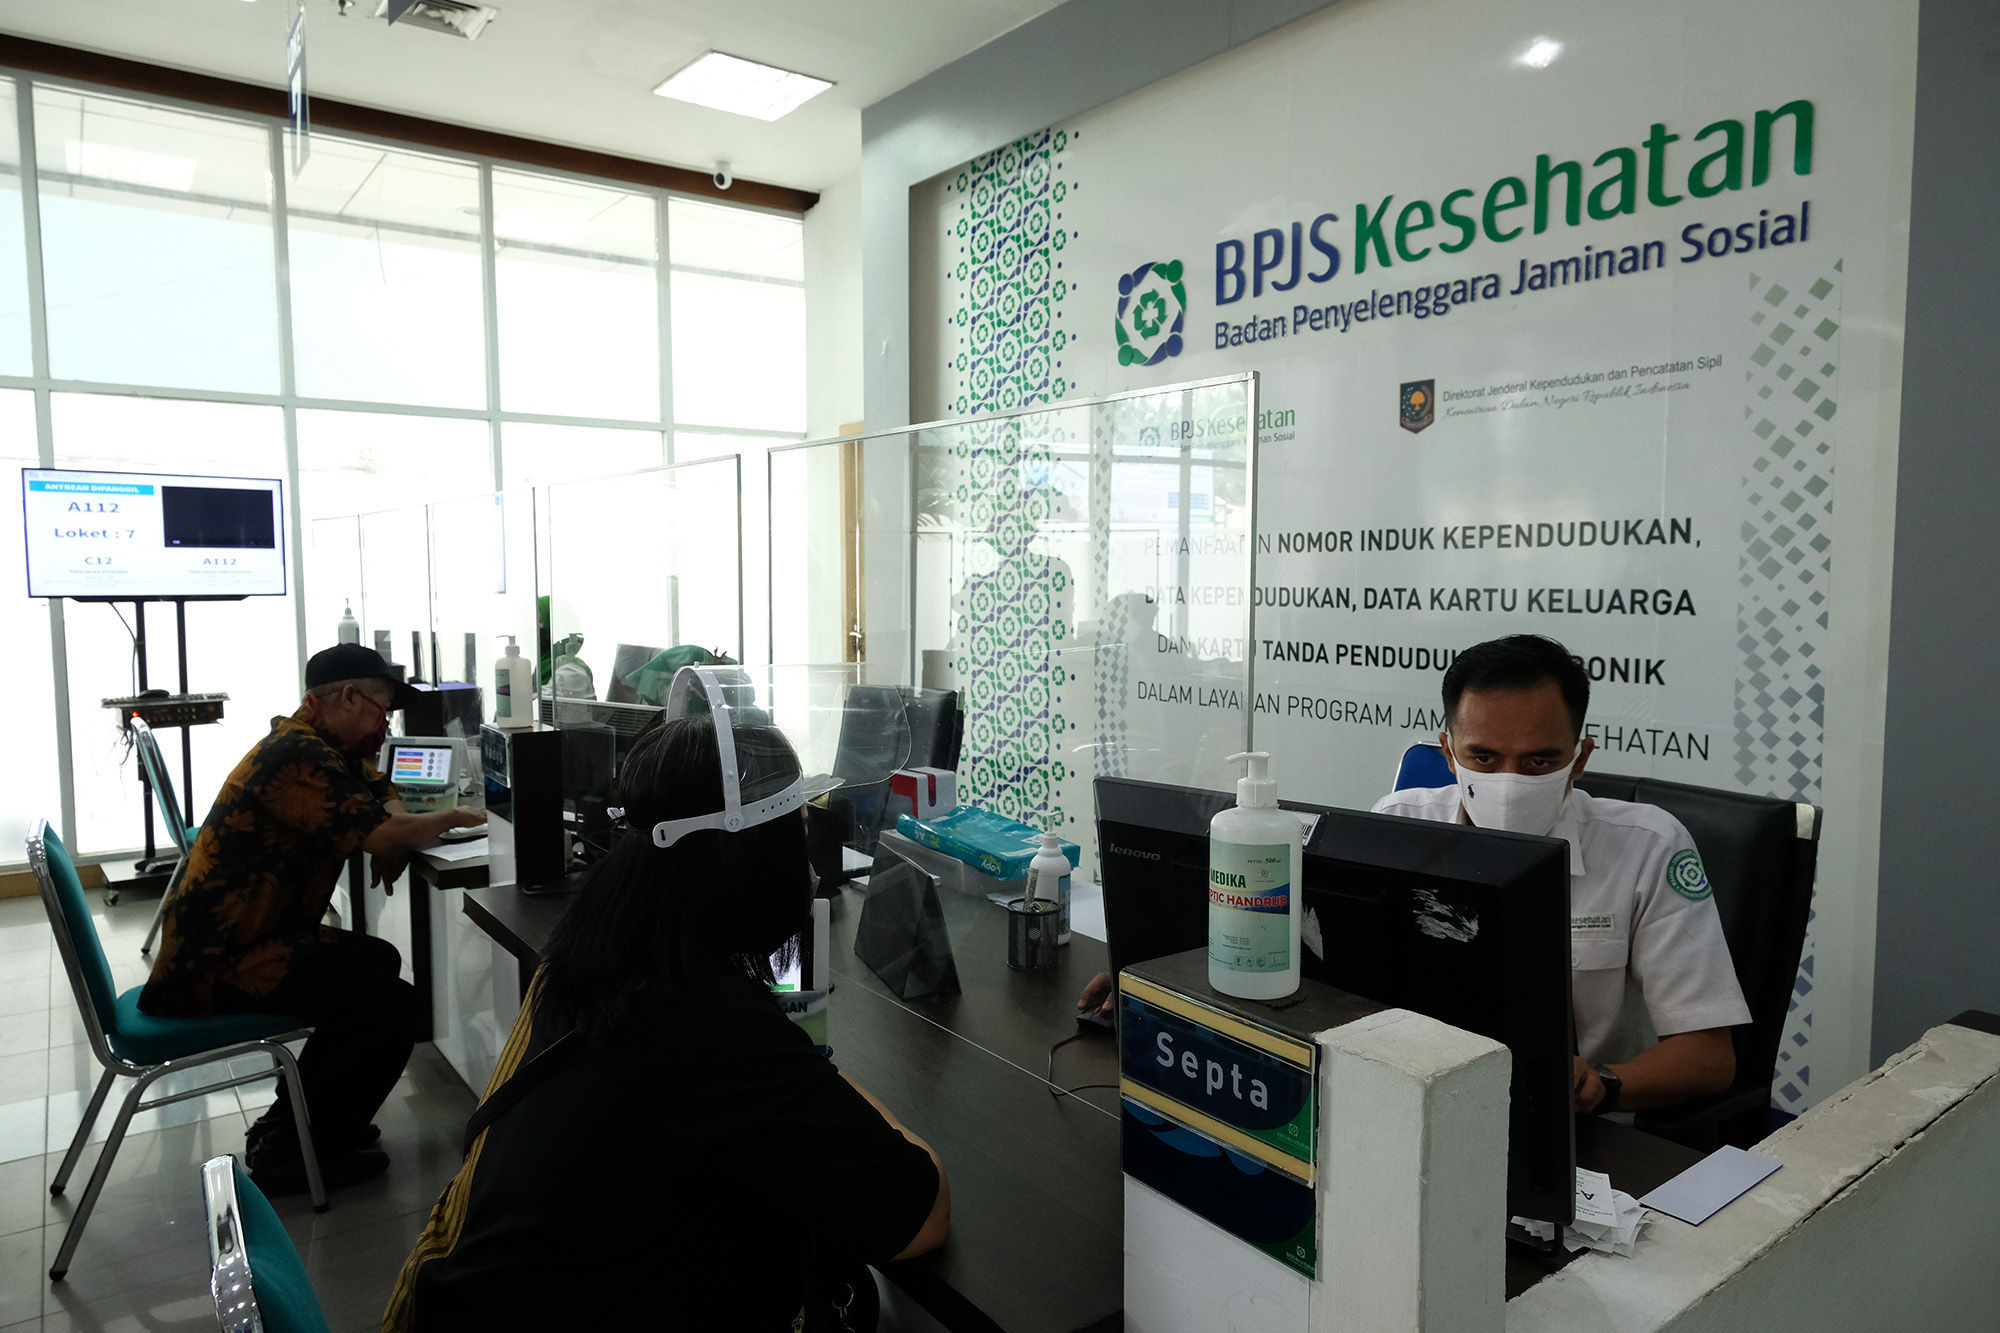 <p>Karyawan melayani warga peserta BPJS Kesehatan di Jakarta, Selasa, 14 Juni 2020. BPJS Kesehatan menyatakan telah menuntaskan pembayaran klaim rumah sakit per 1 Juli sebesar Rp3,70 triliun seiring awal bulan Juli BPJS Kesehatan telah menerima iuran peserta Penerima Iuran Bantuan (PIB) APBN dari pemerintah sebesar Rp4,05 triliun. Foto: Ismail Pohan/TrenAsia</p>
